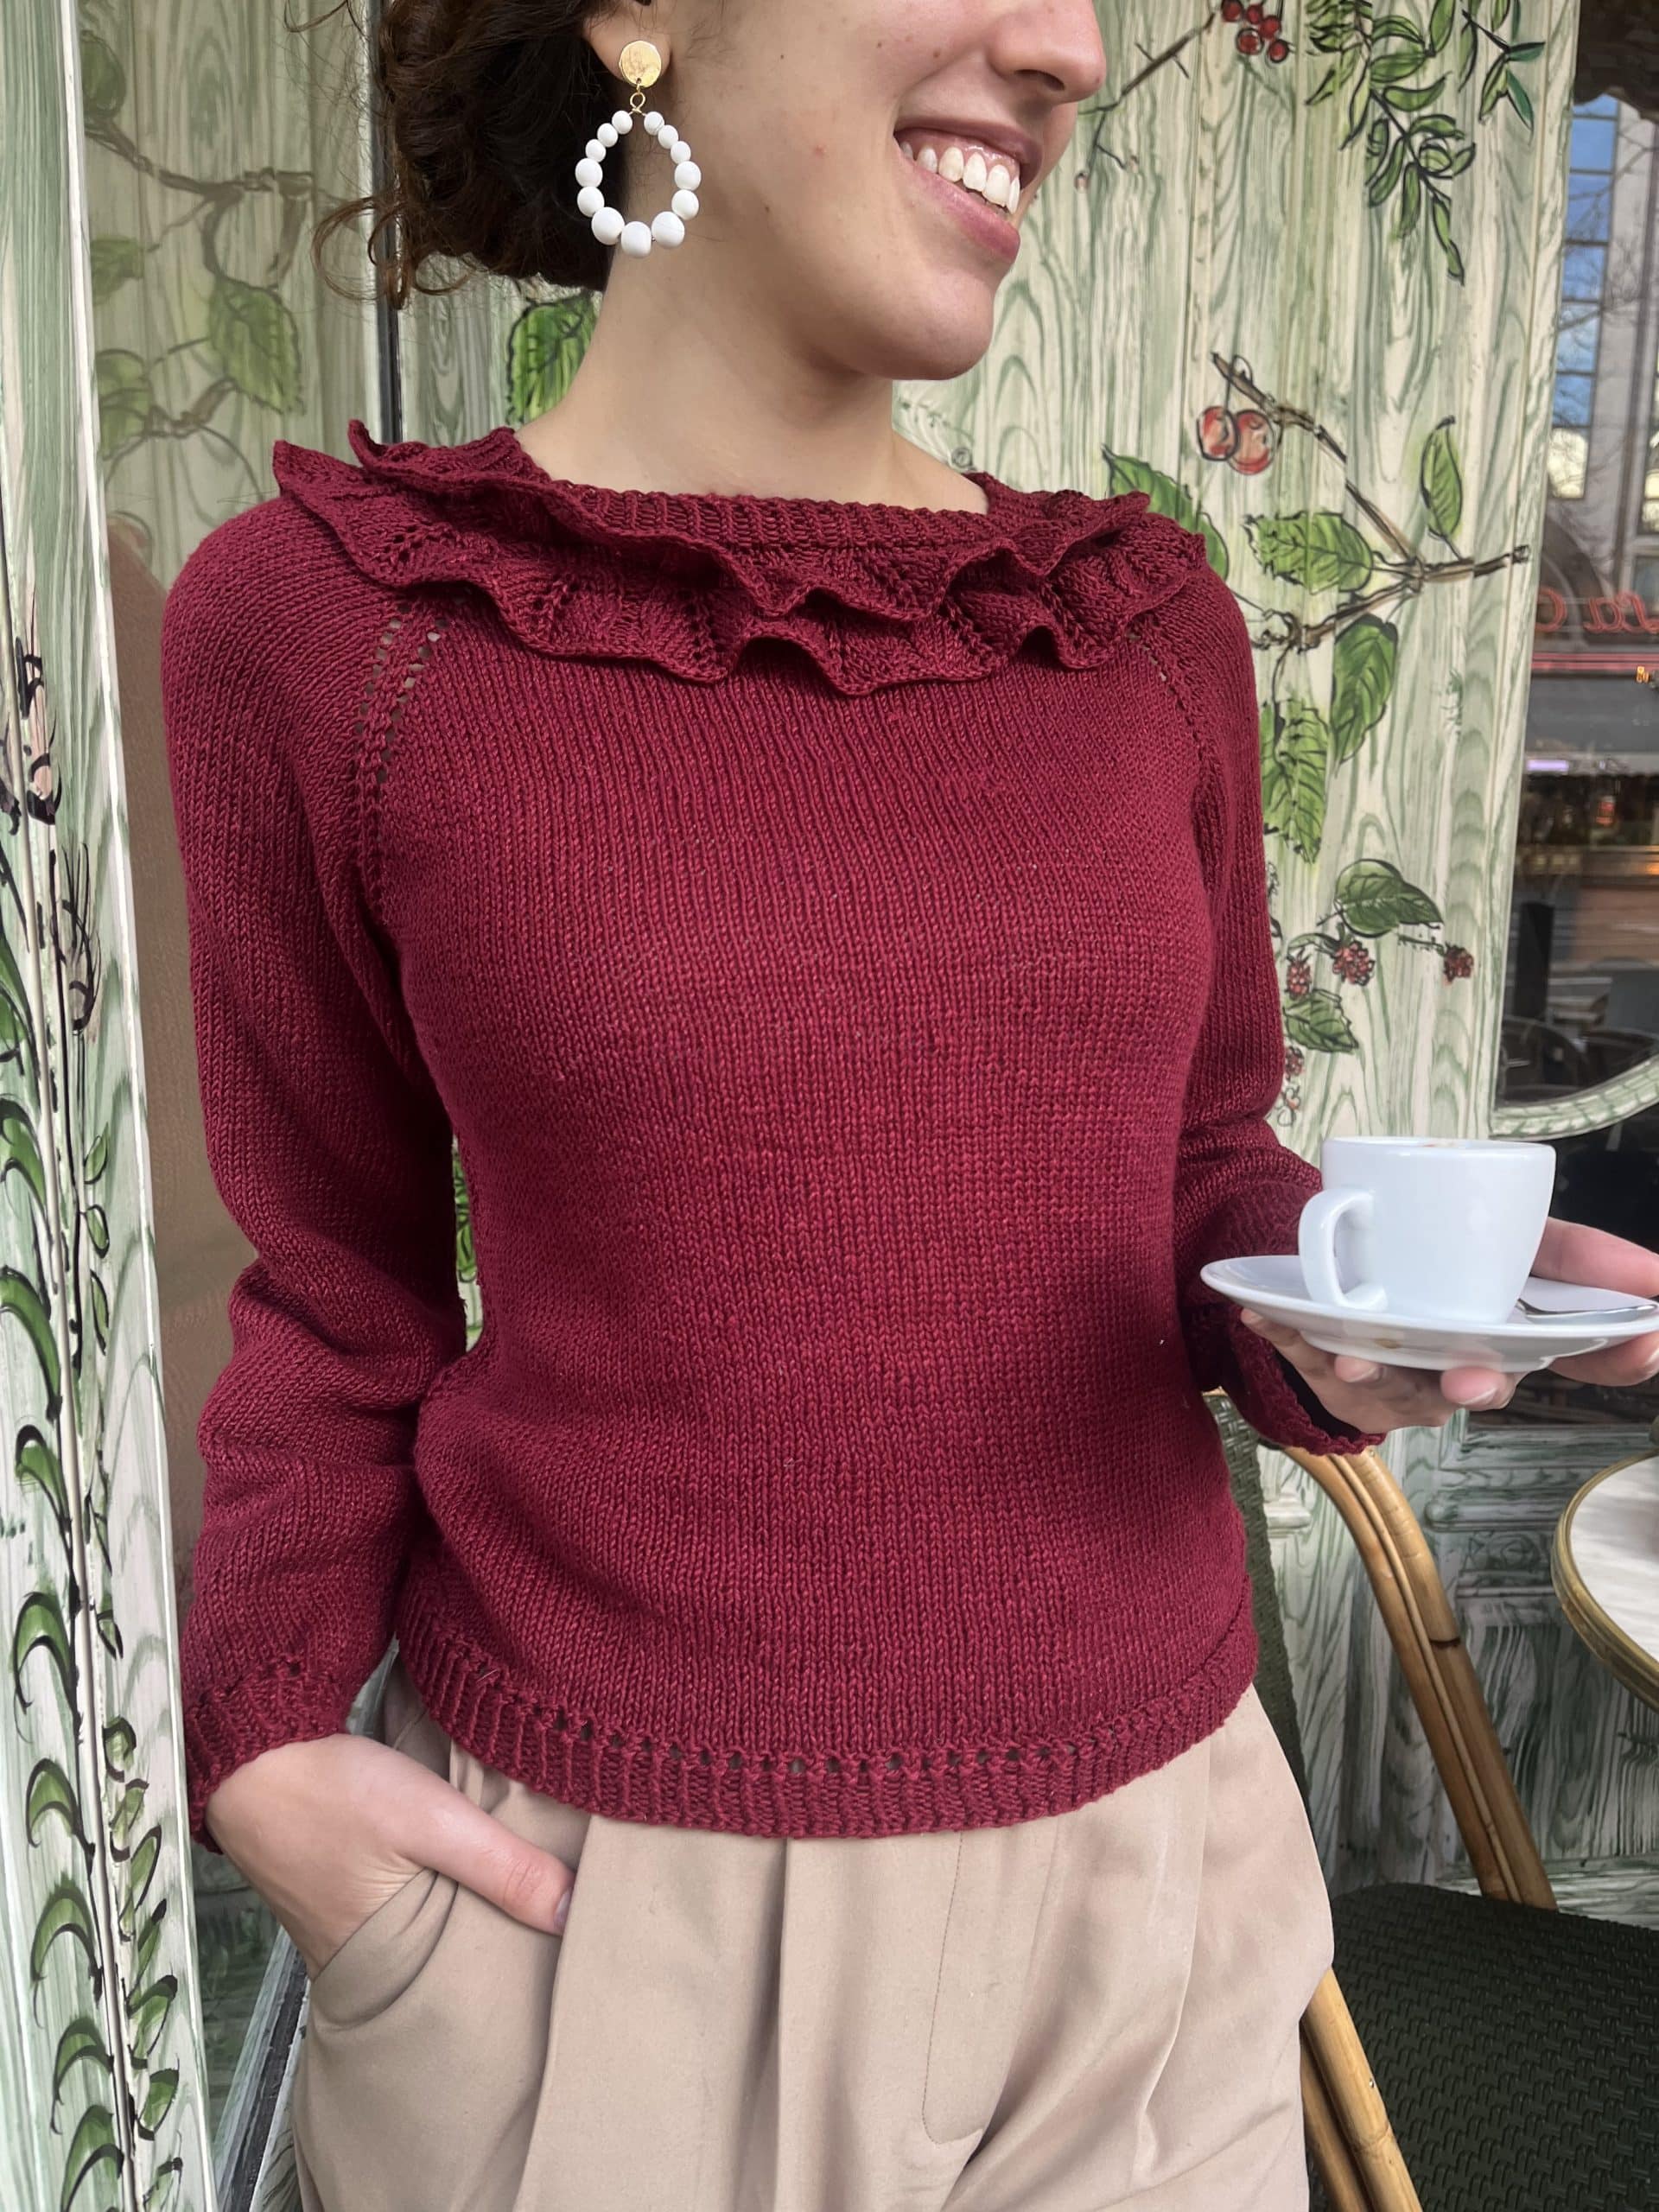 kit lil'daisy par @lilyandstitch knit